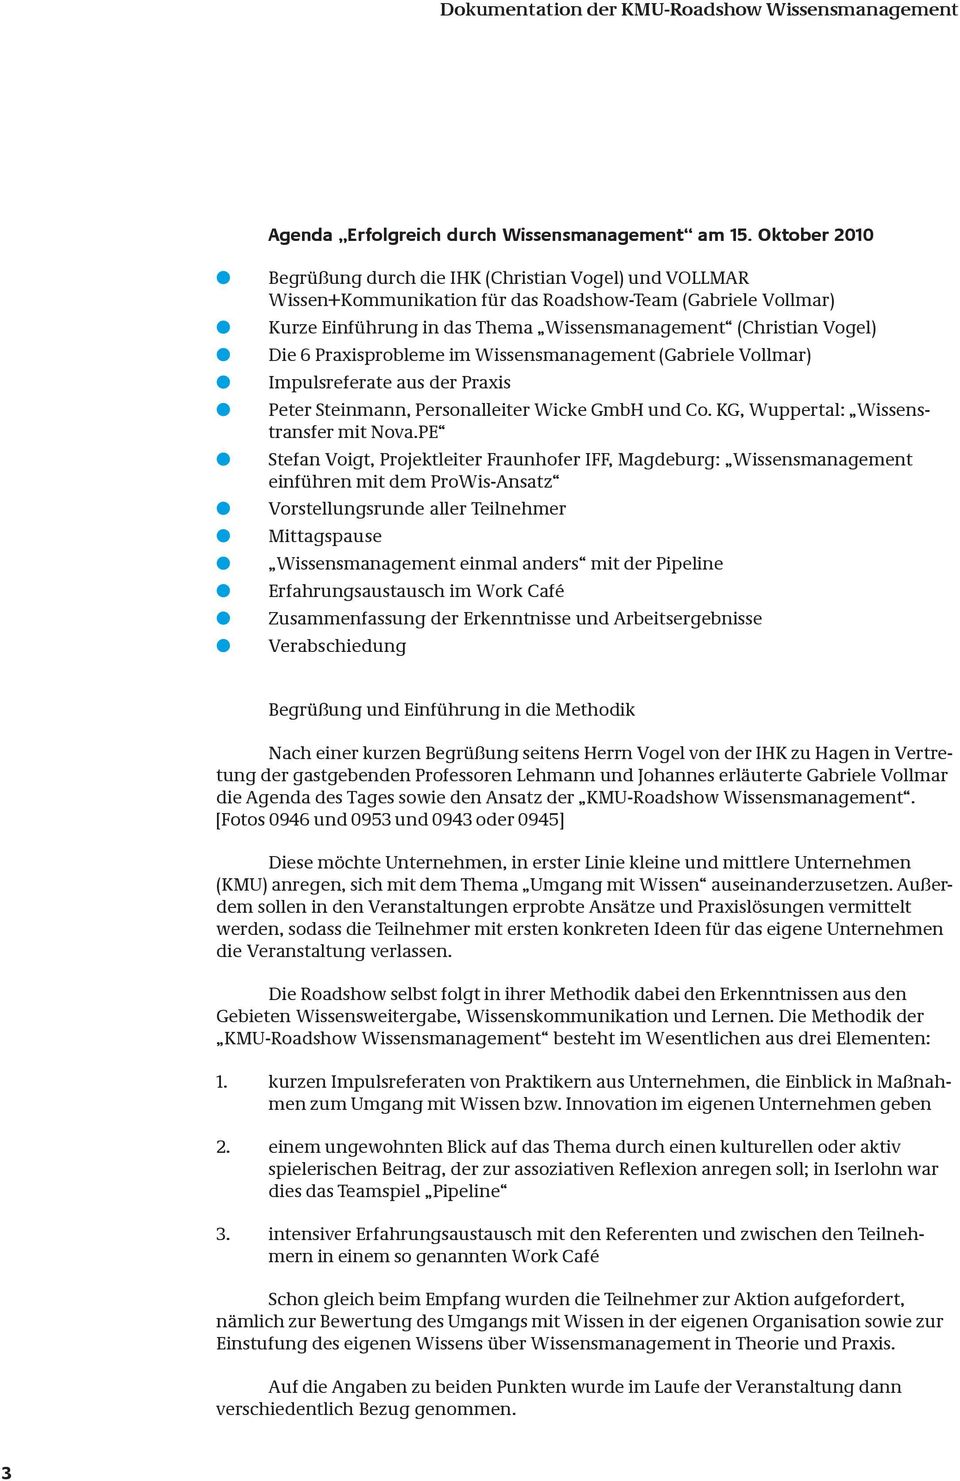 6 Praxisprobleme im Wissensmanagement (Gabriele Vollmar) Impulsreferate aus der Praxis Peter Steinmann, Personalleiter Wicke GmbH und Co. KG, Wuppertal: Wissenstransfer mit Nova.